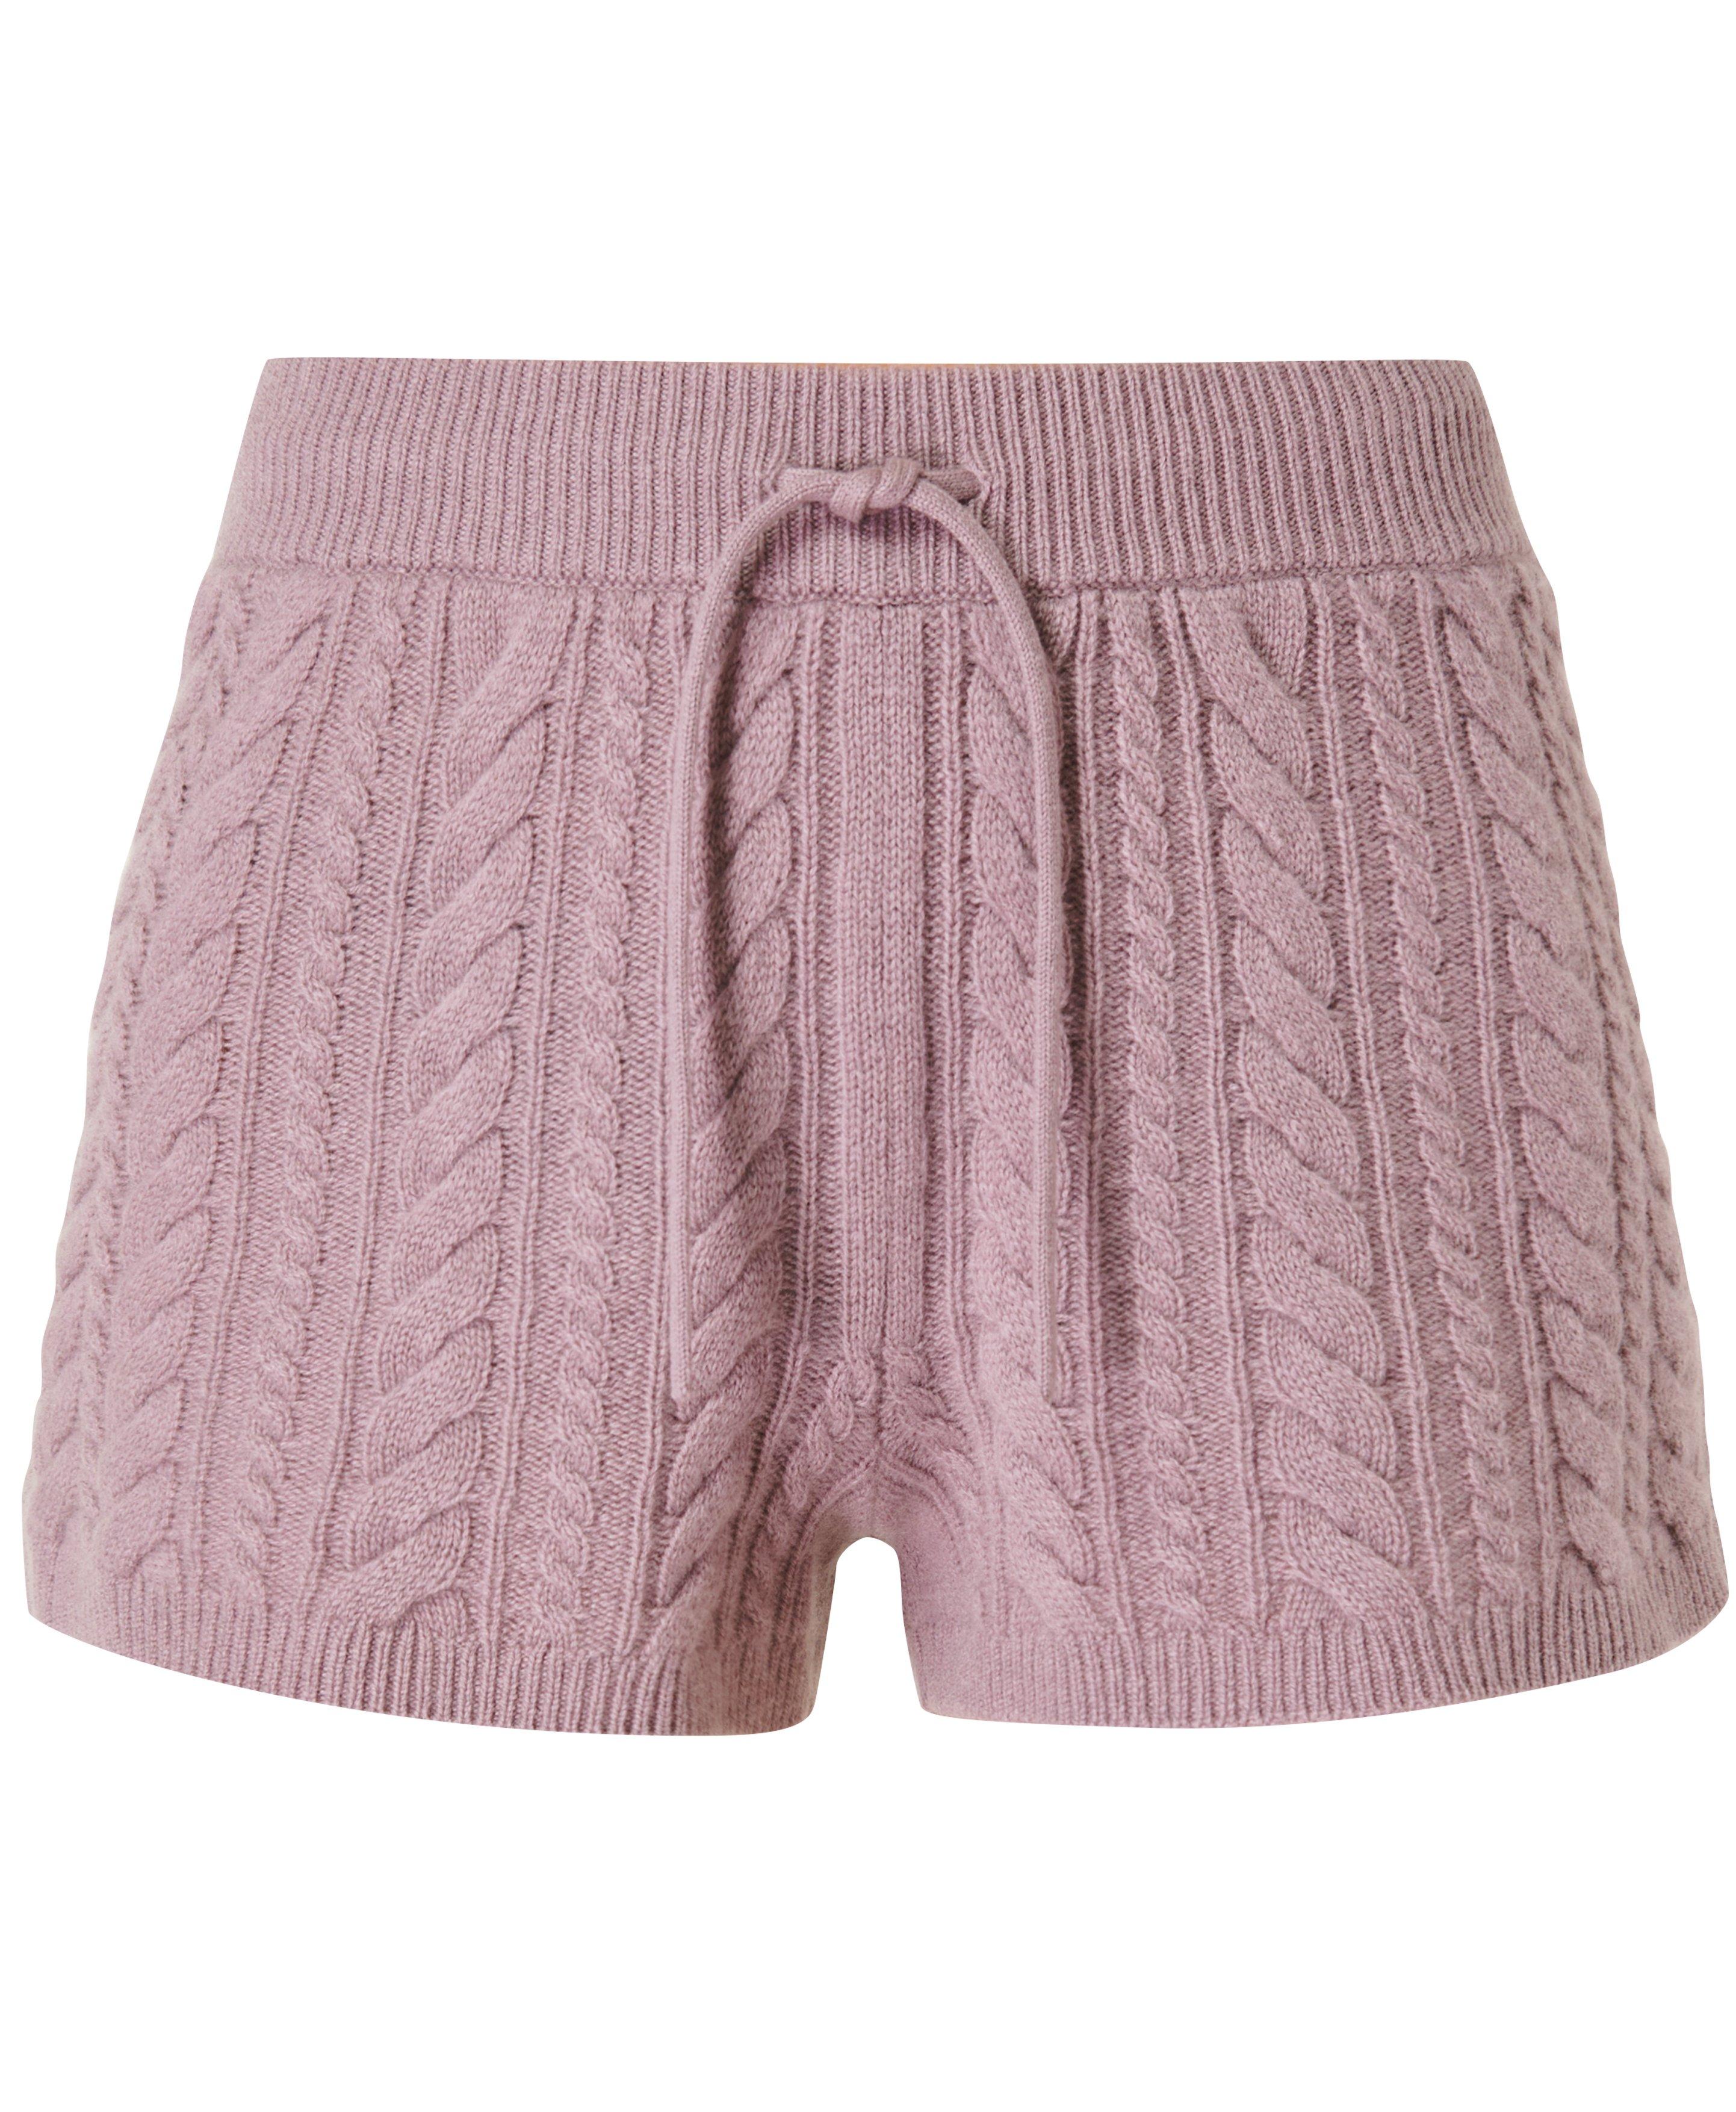 Cozy Grey Cable Knit Shorts - Sweater Shorts - Drawstring Shorts